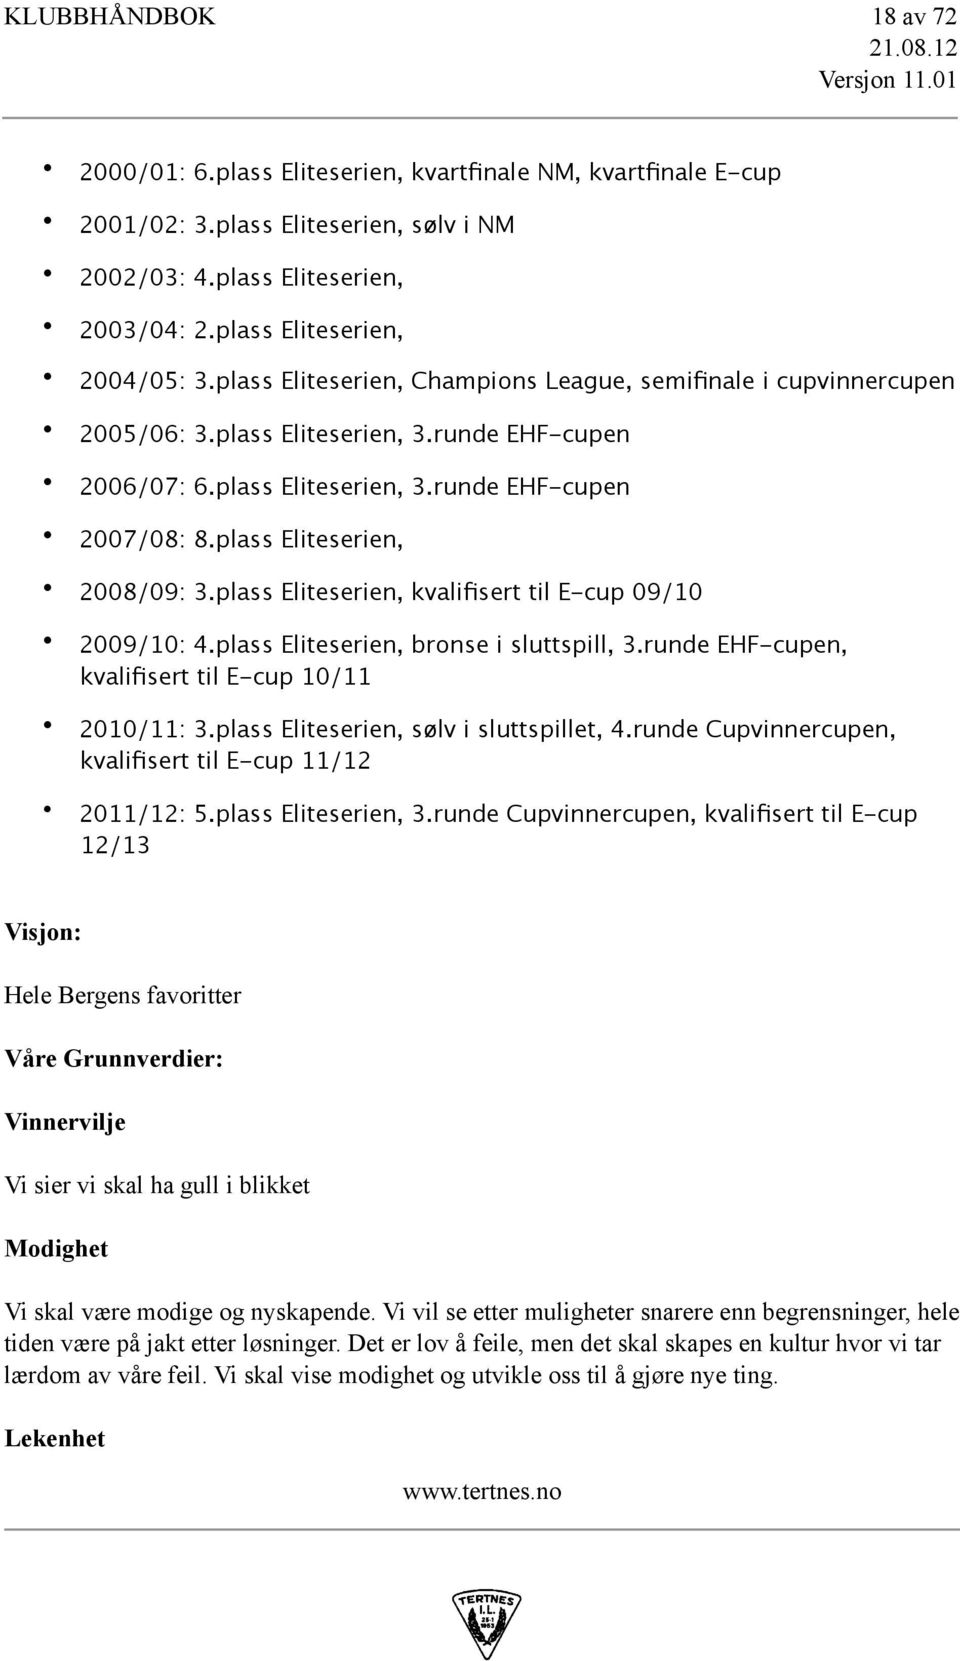 plass Eliteserien, 2008/09: 3.plass Eliteserien, kvalifisert til E-cup 09/10 2009/10: 4.plass Eliteserien, bronse i sluttspill, 3.runde EHF-cupen, kvalifisert til E-cup 10/11 2010/11: 3.